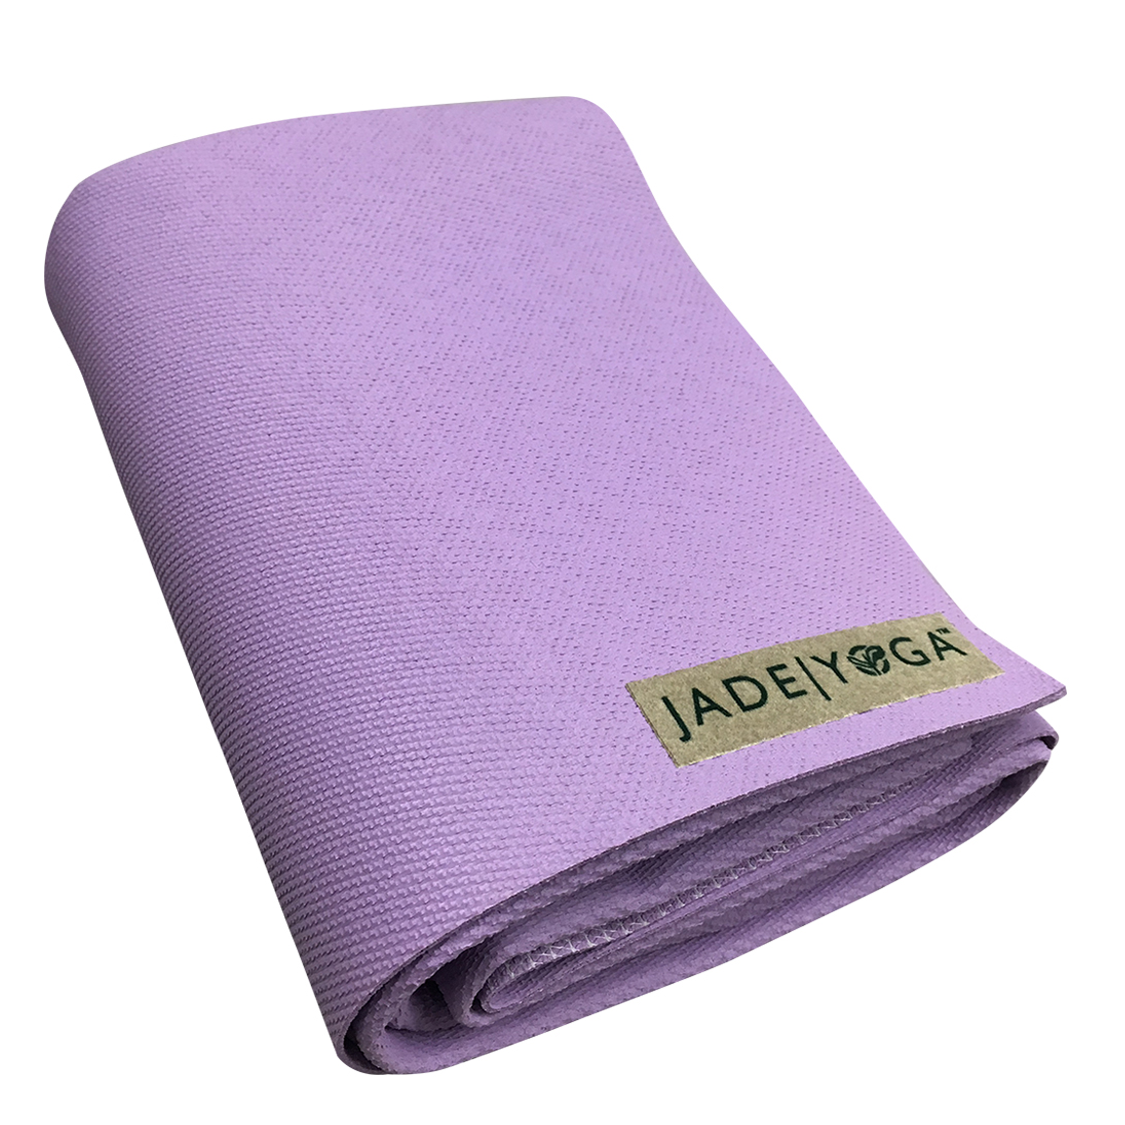 https://www.jadeyoga.sg/cdn/shop/products/jade-yoga-voyager-mat-lavender_1125x.png?v=1586099129